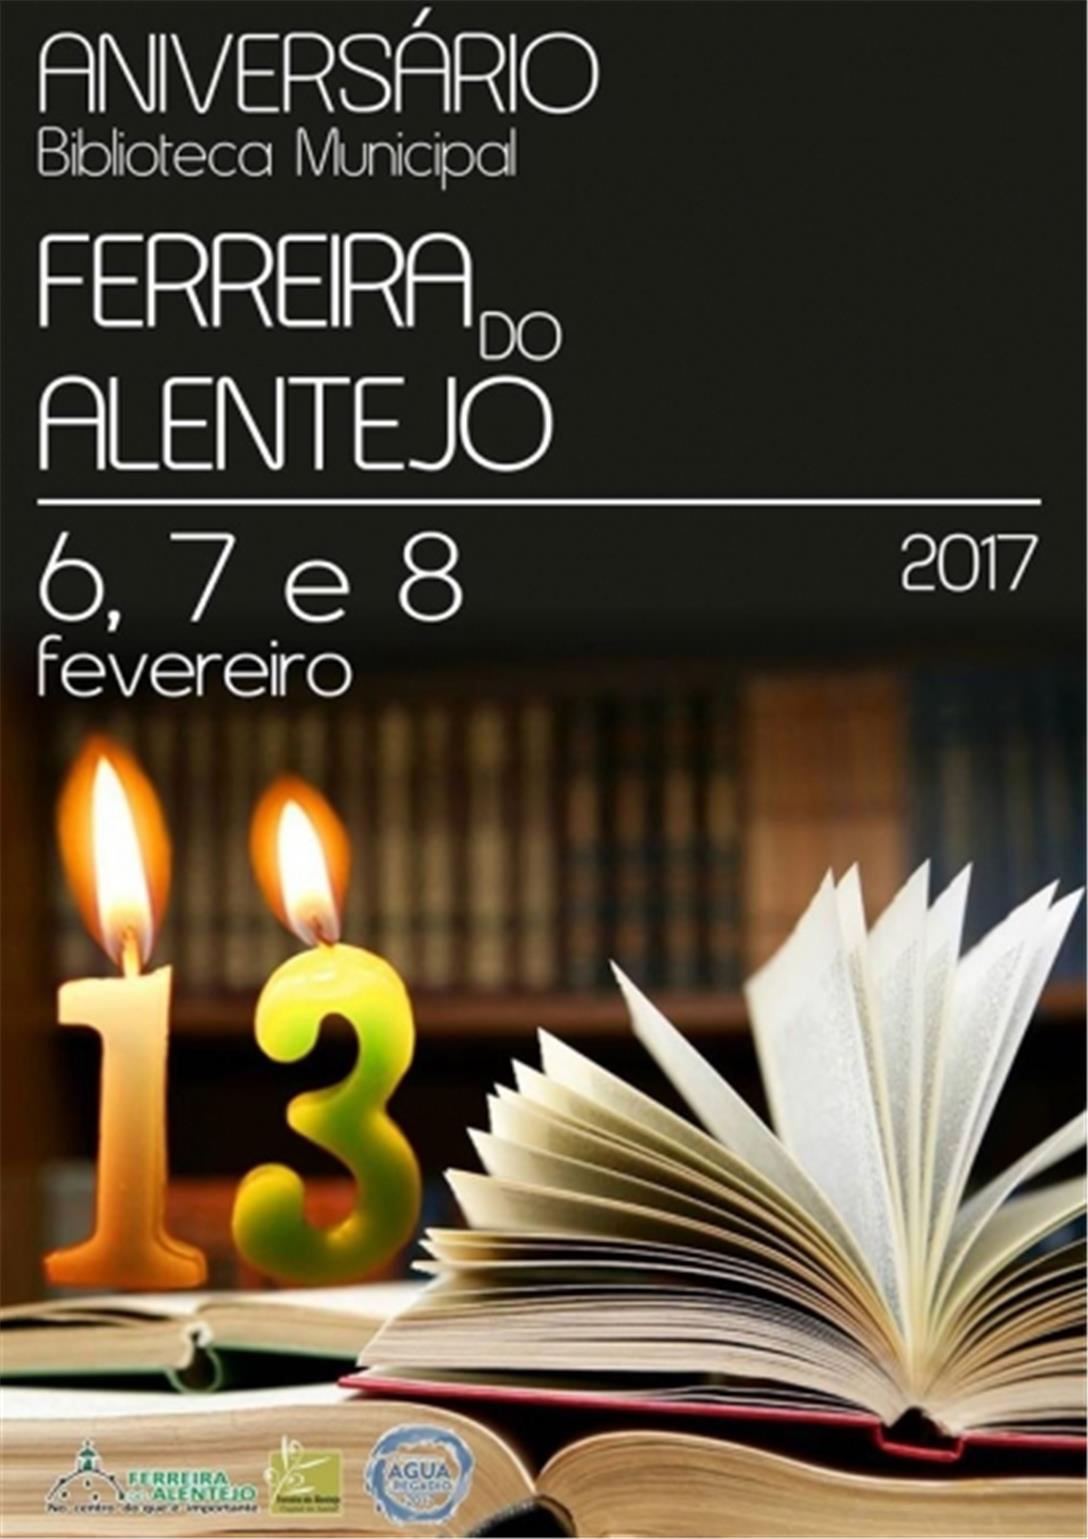 13.º Aniversário da Biblioteca Municipal de Ferreira do Alentejo